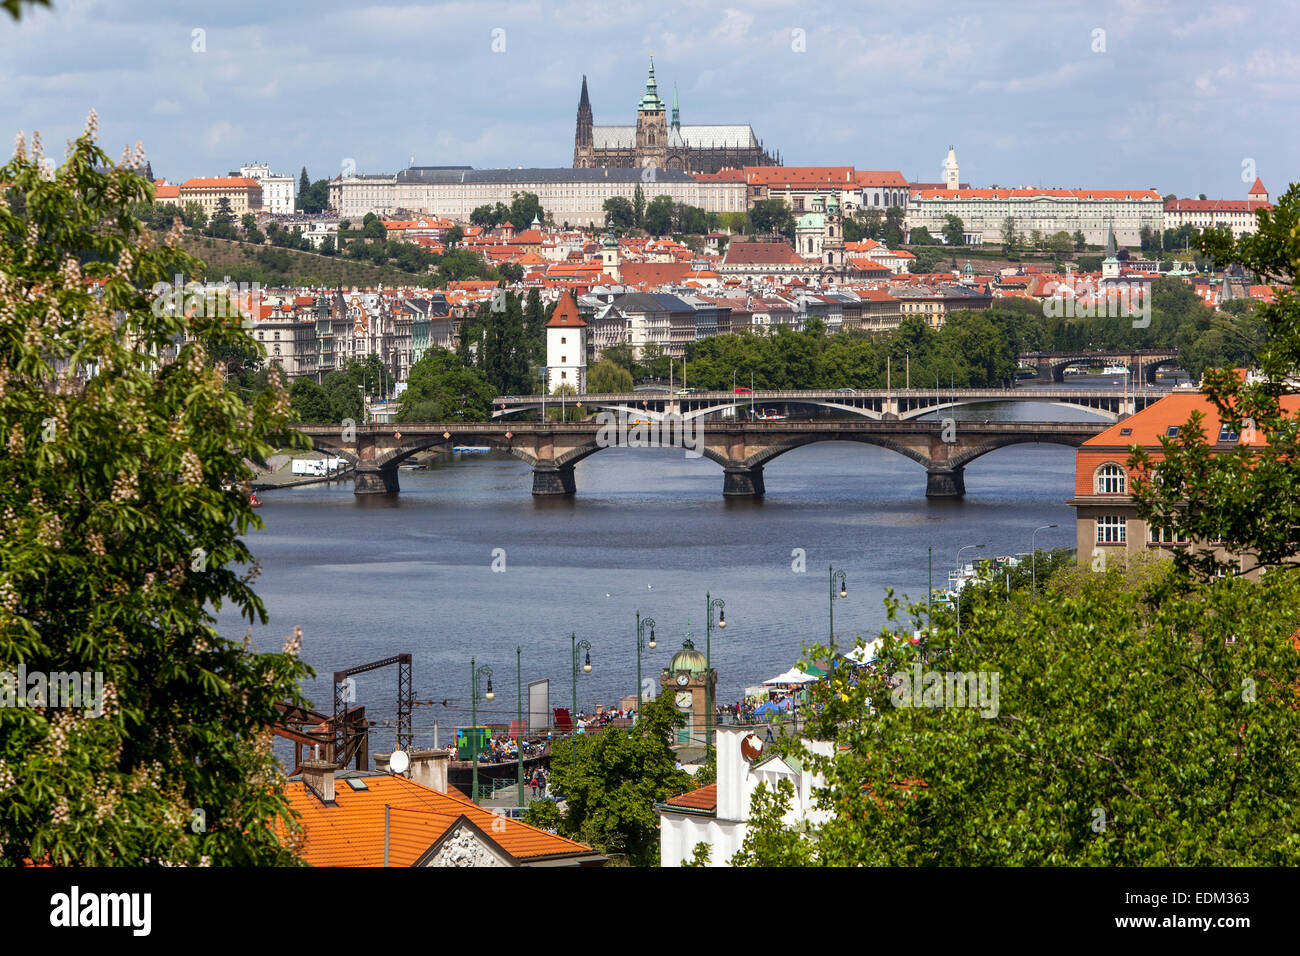 Panoramablick auf die Prager Burg mit Brücken über die Moldau, Blick auf die Tschechische Republik Prag von der Moldau, Brücke Moldau in Prag Stockfoto